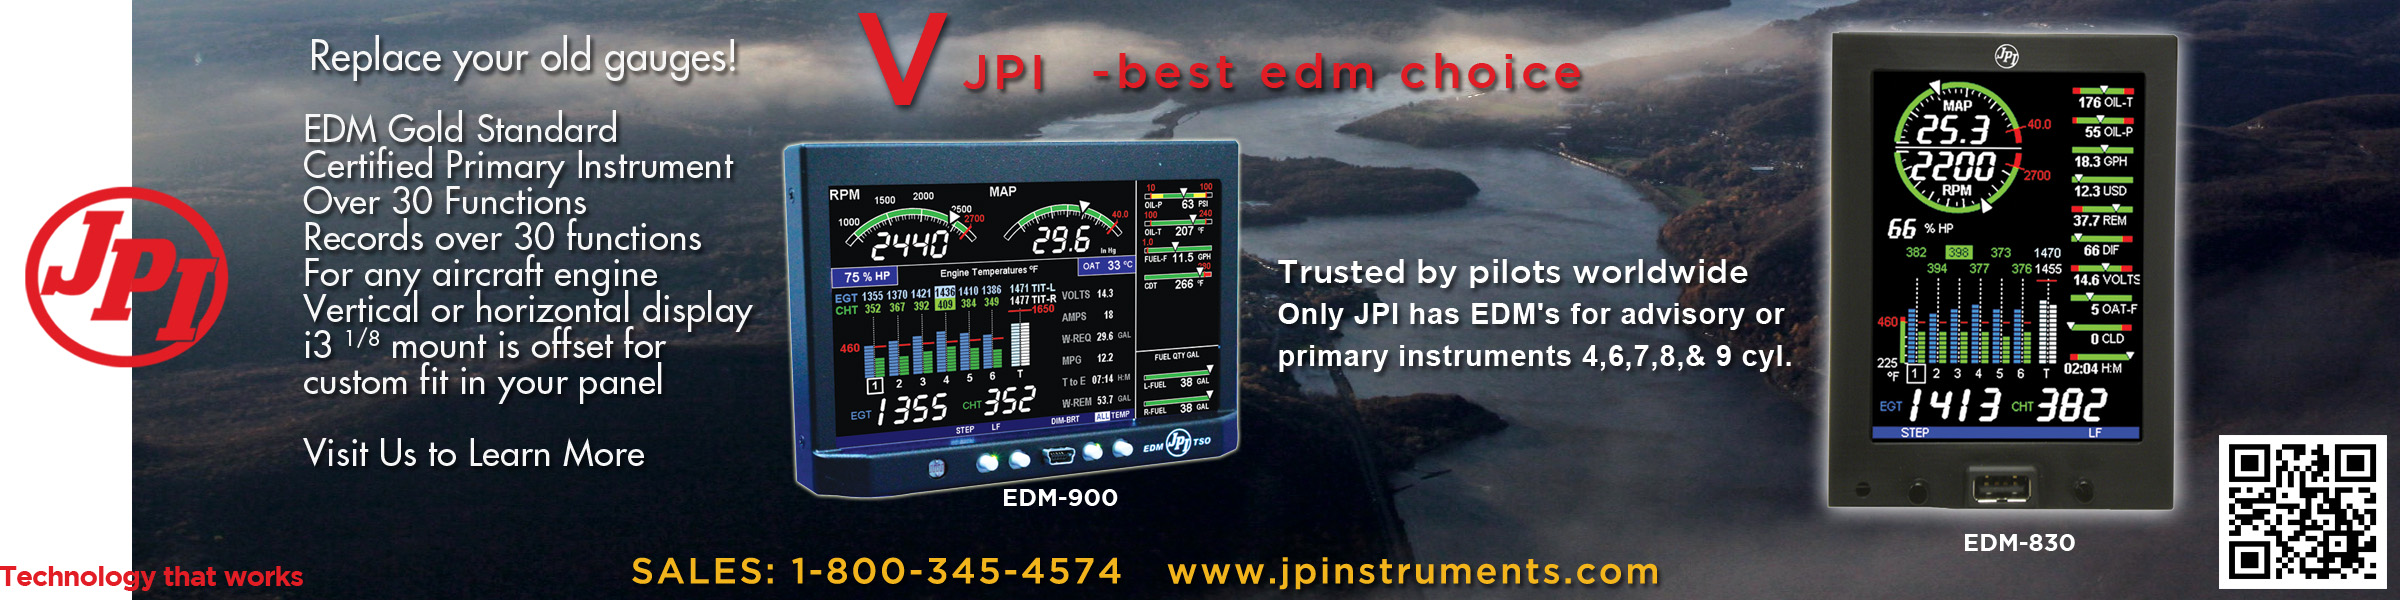 JP Instruments 'best edm choice